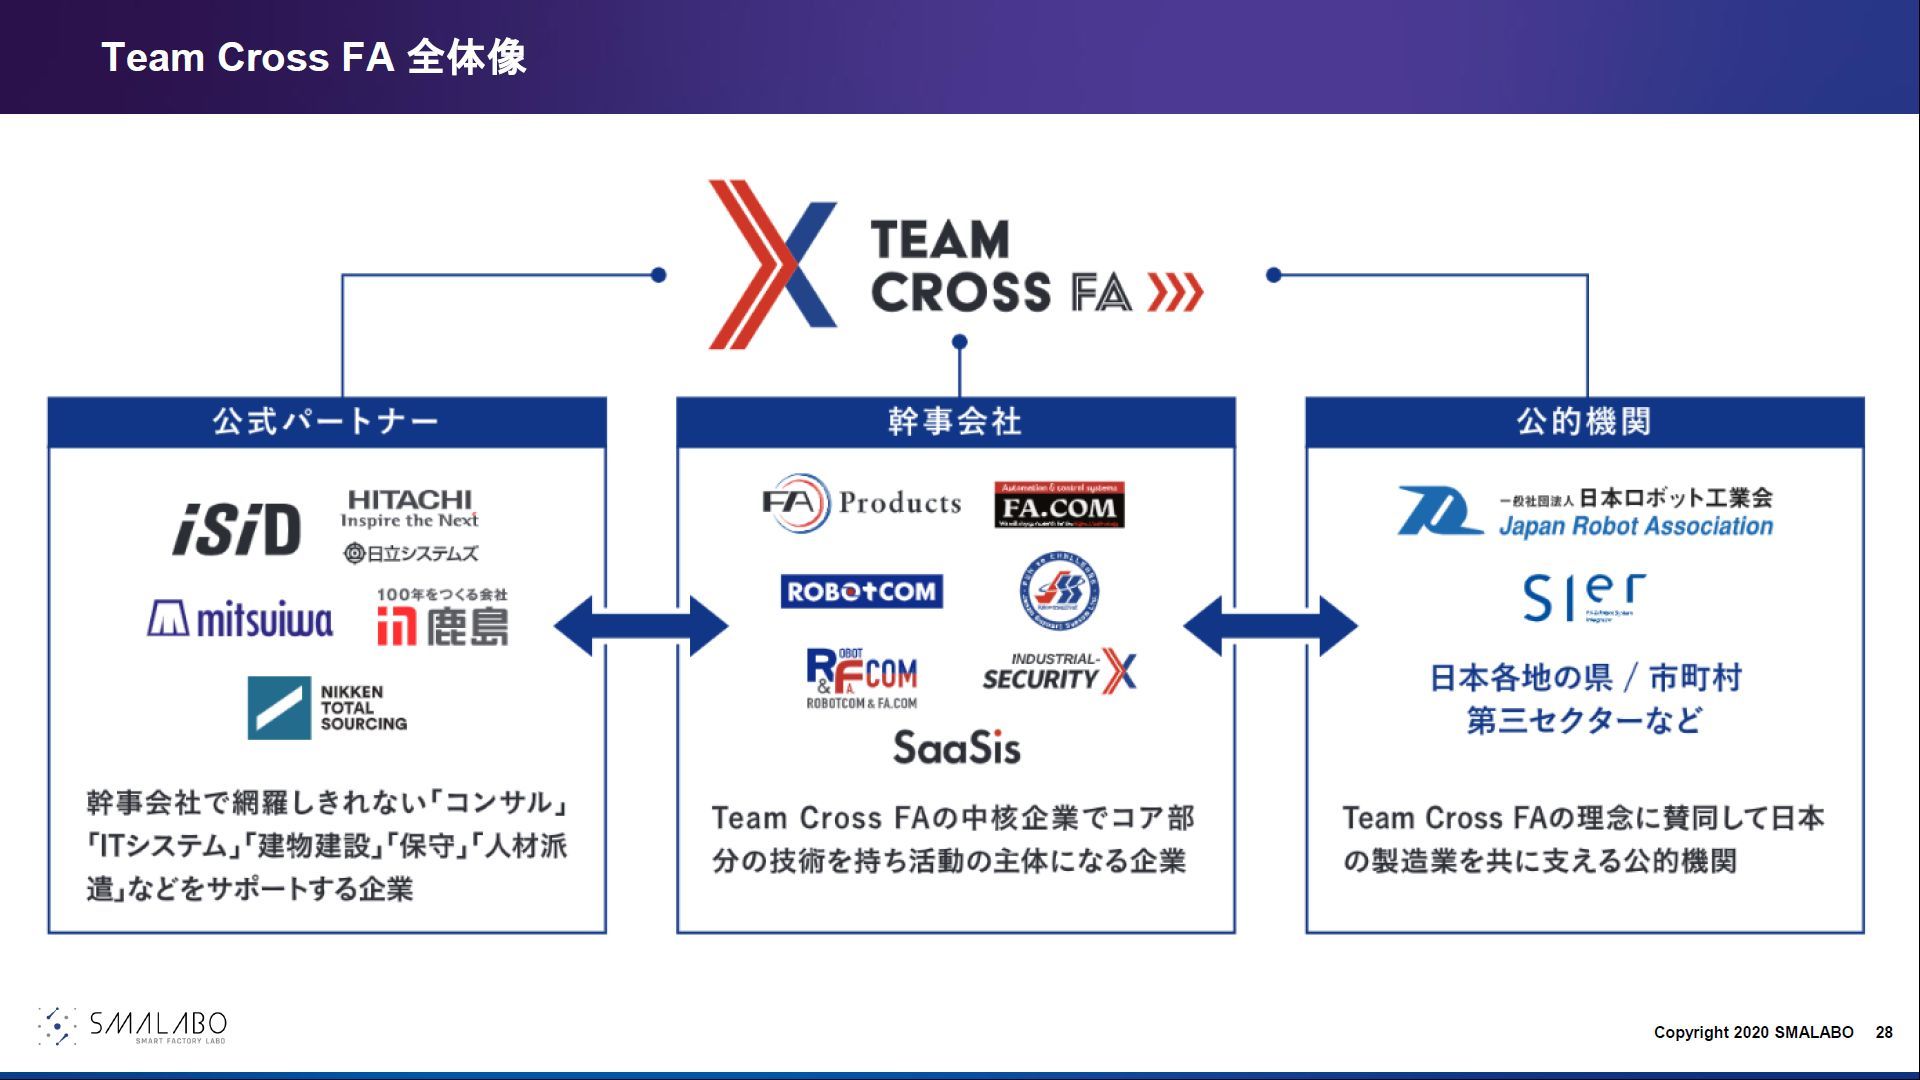 Team Cross FȂgDT}mNbNĊgnoTFTeam Cross FA